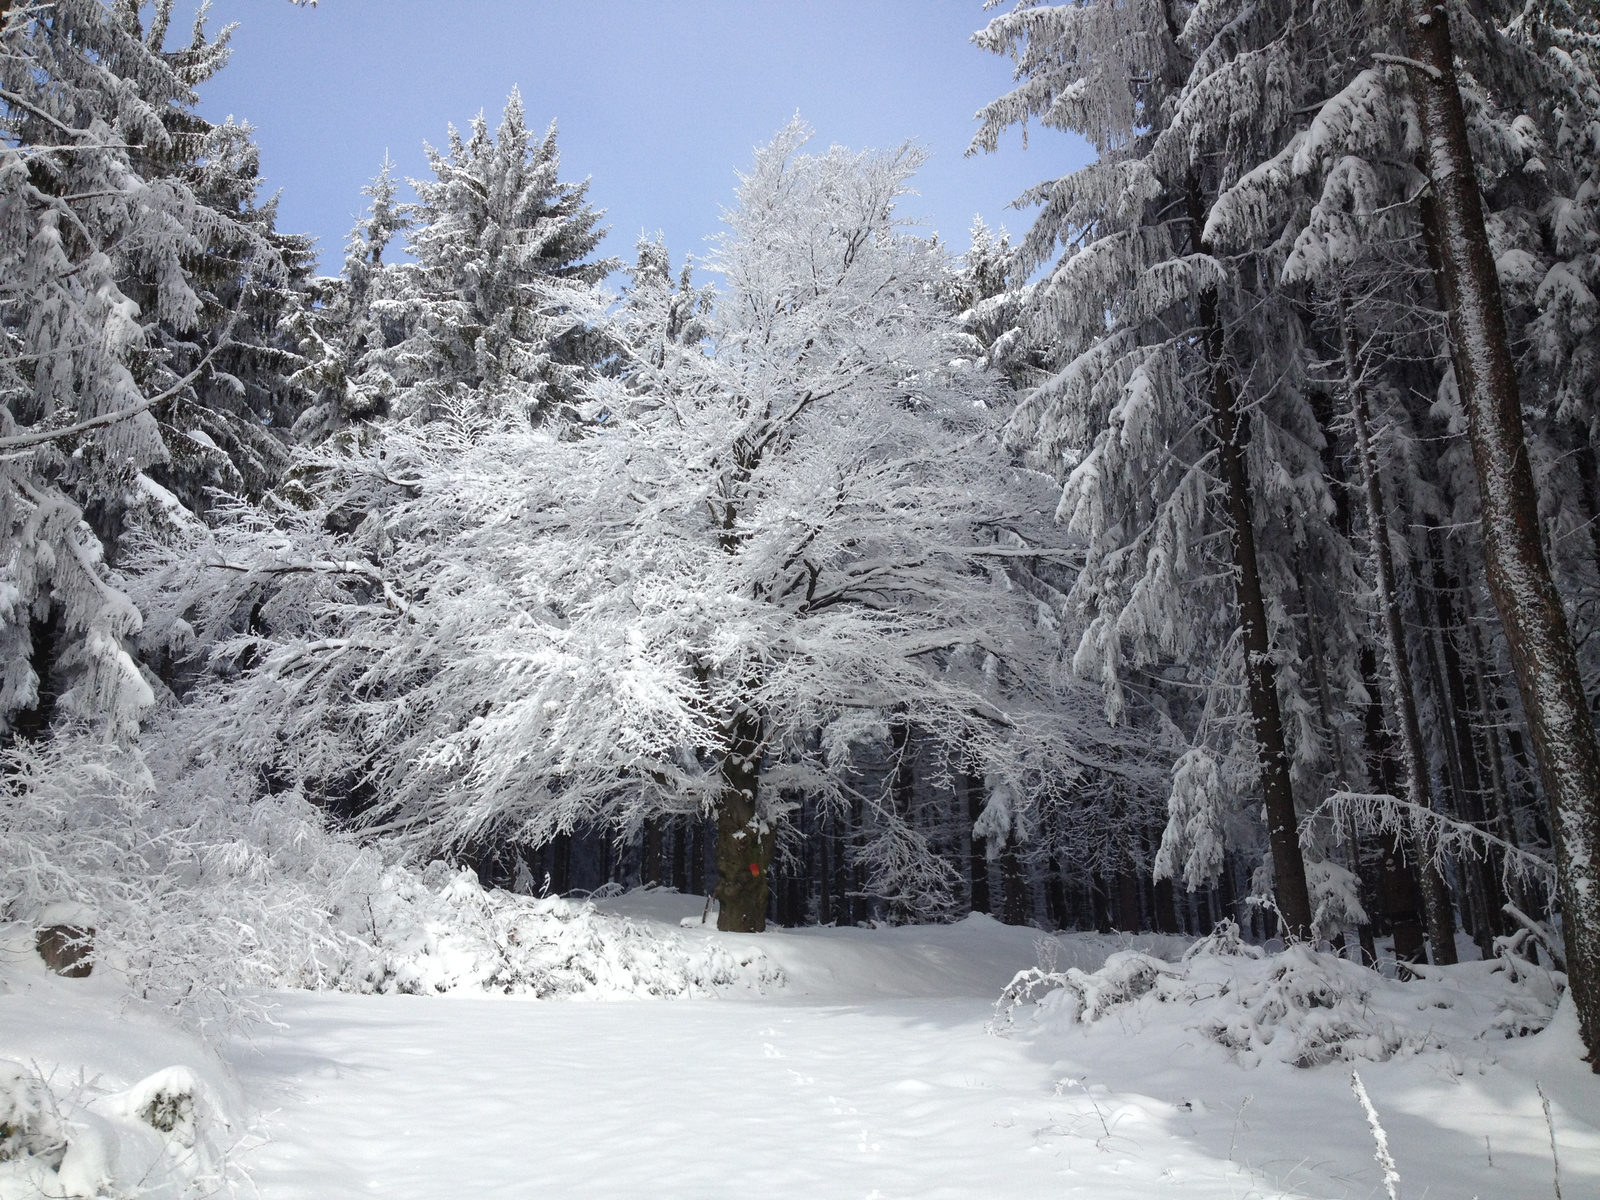 IMG 6055 Csodálatos havas-deres erdő 800 m felett